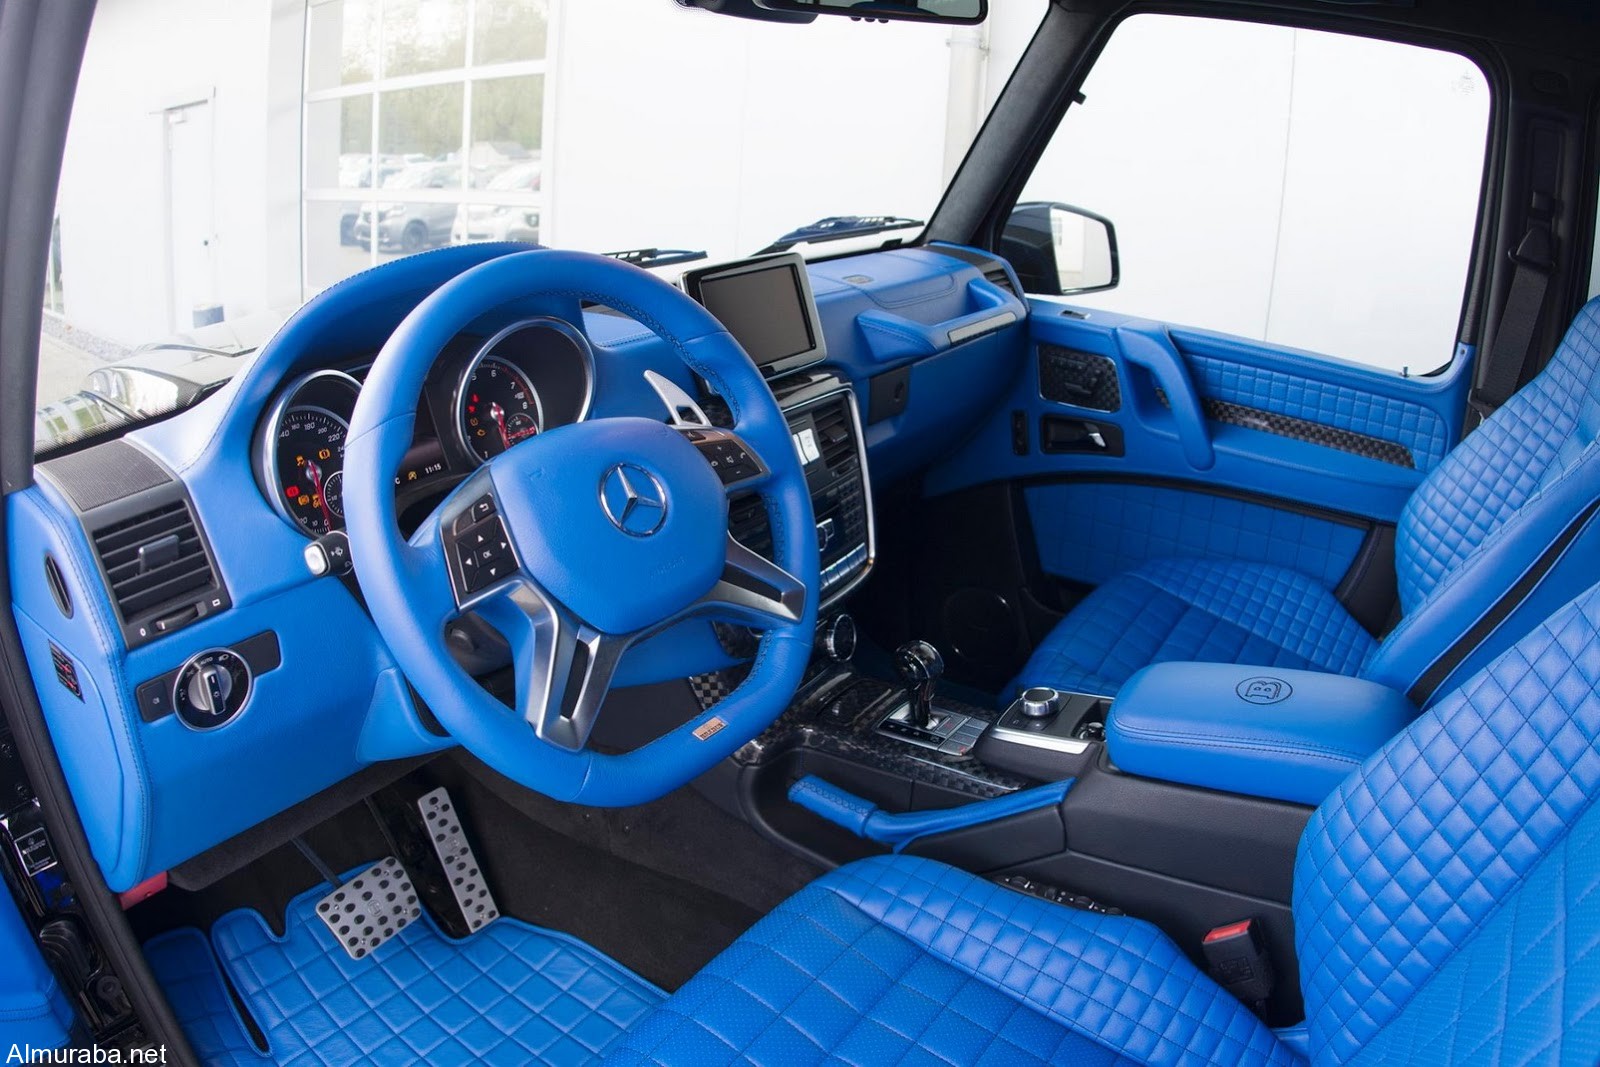 brabus-500-4x4-blue-interior-19